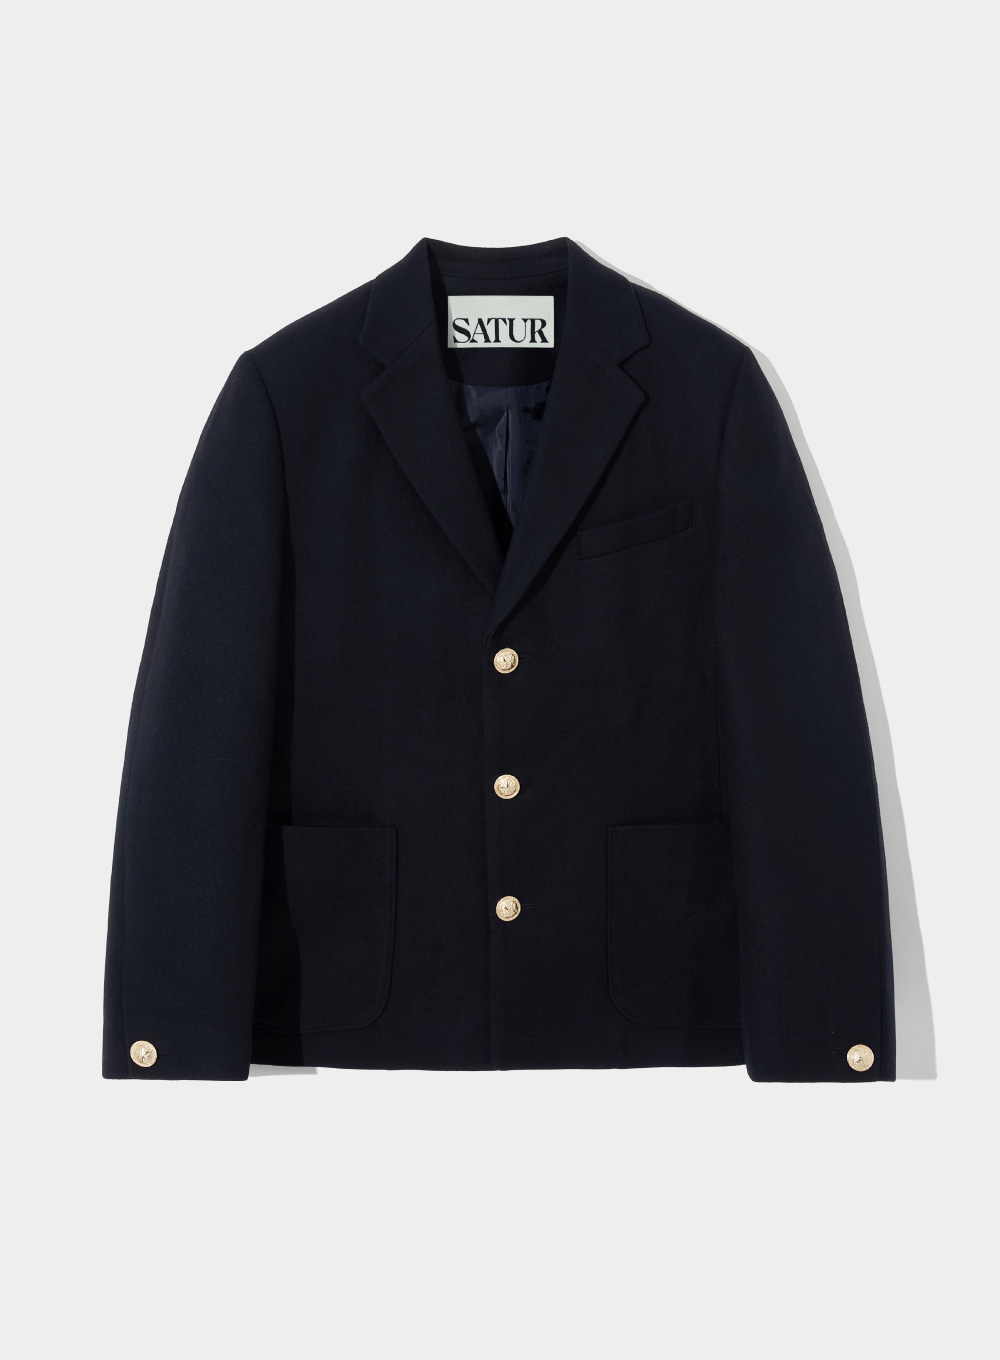 [10월 9일 예약배송]Classic 3-Button Wool Jacket - Classic Navy